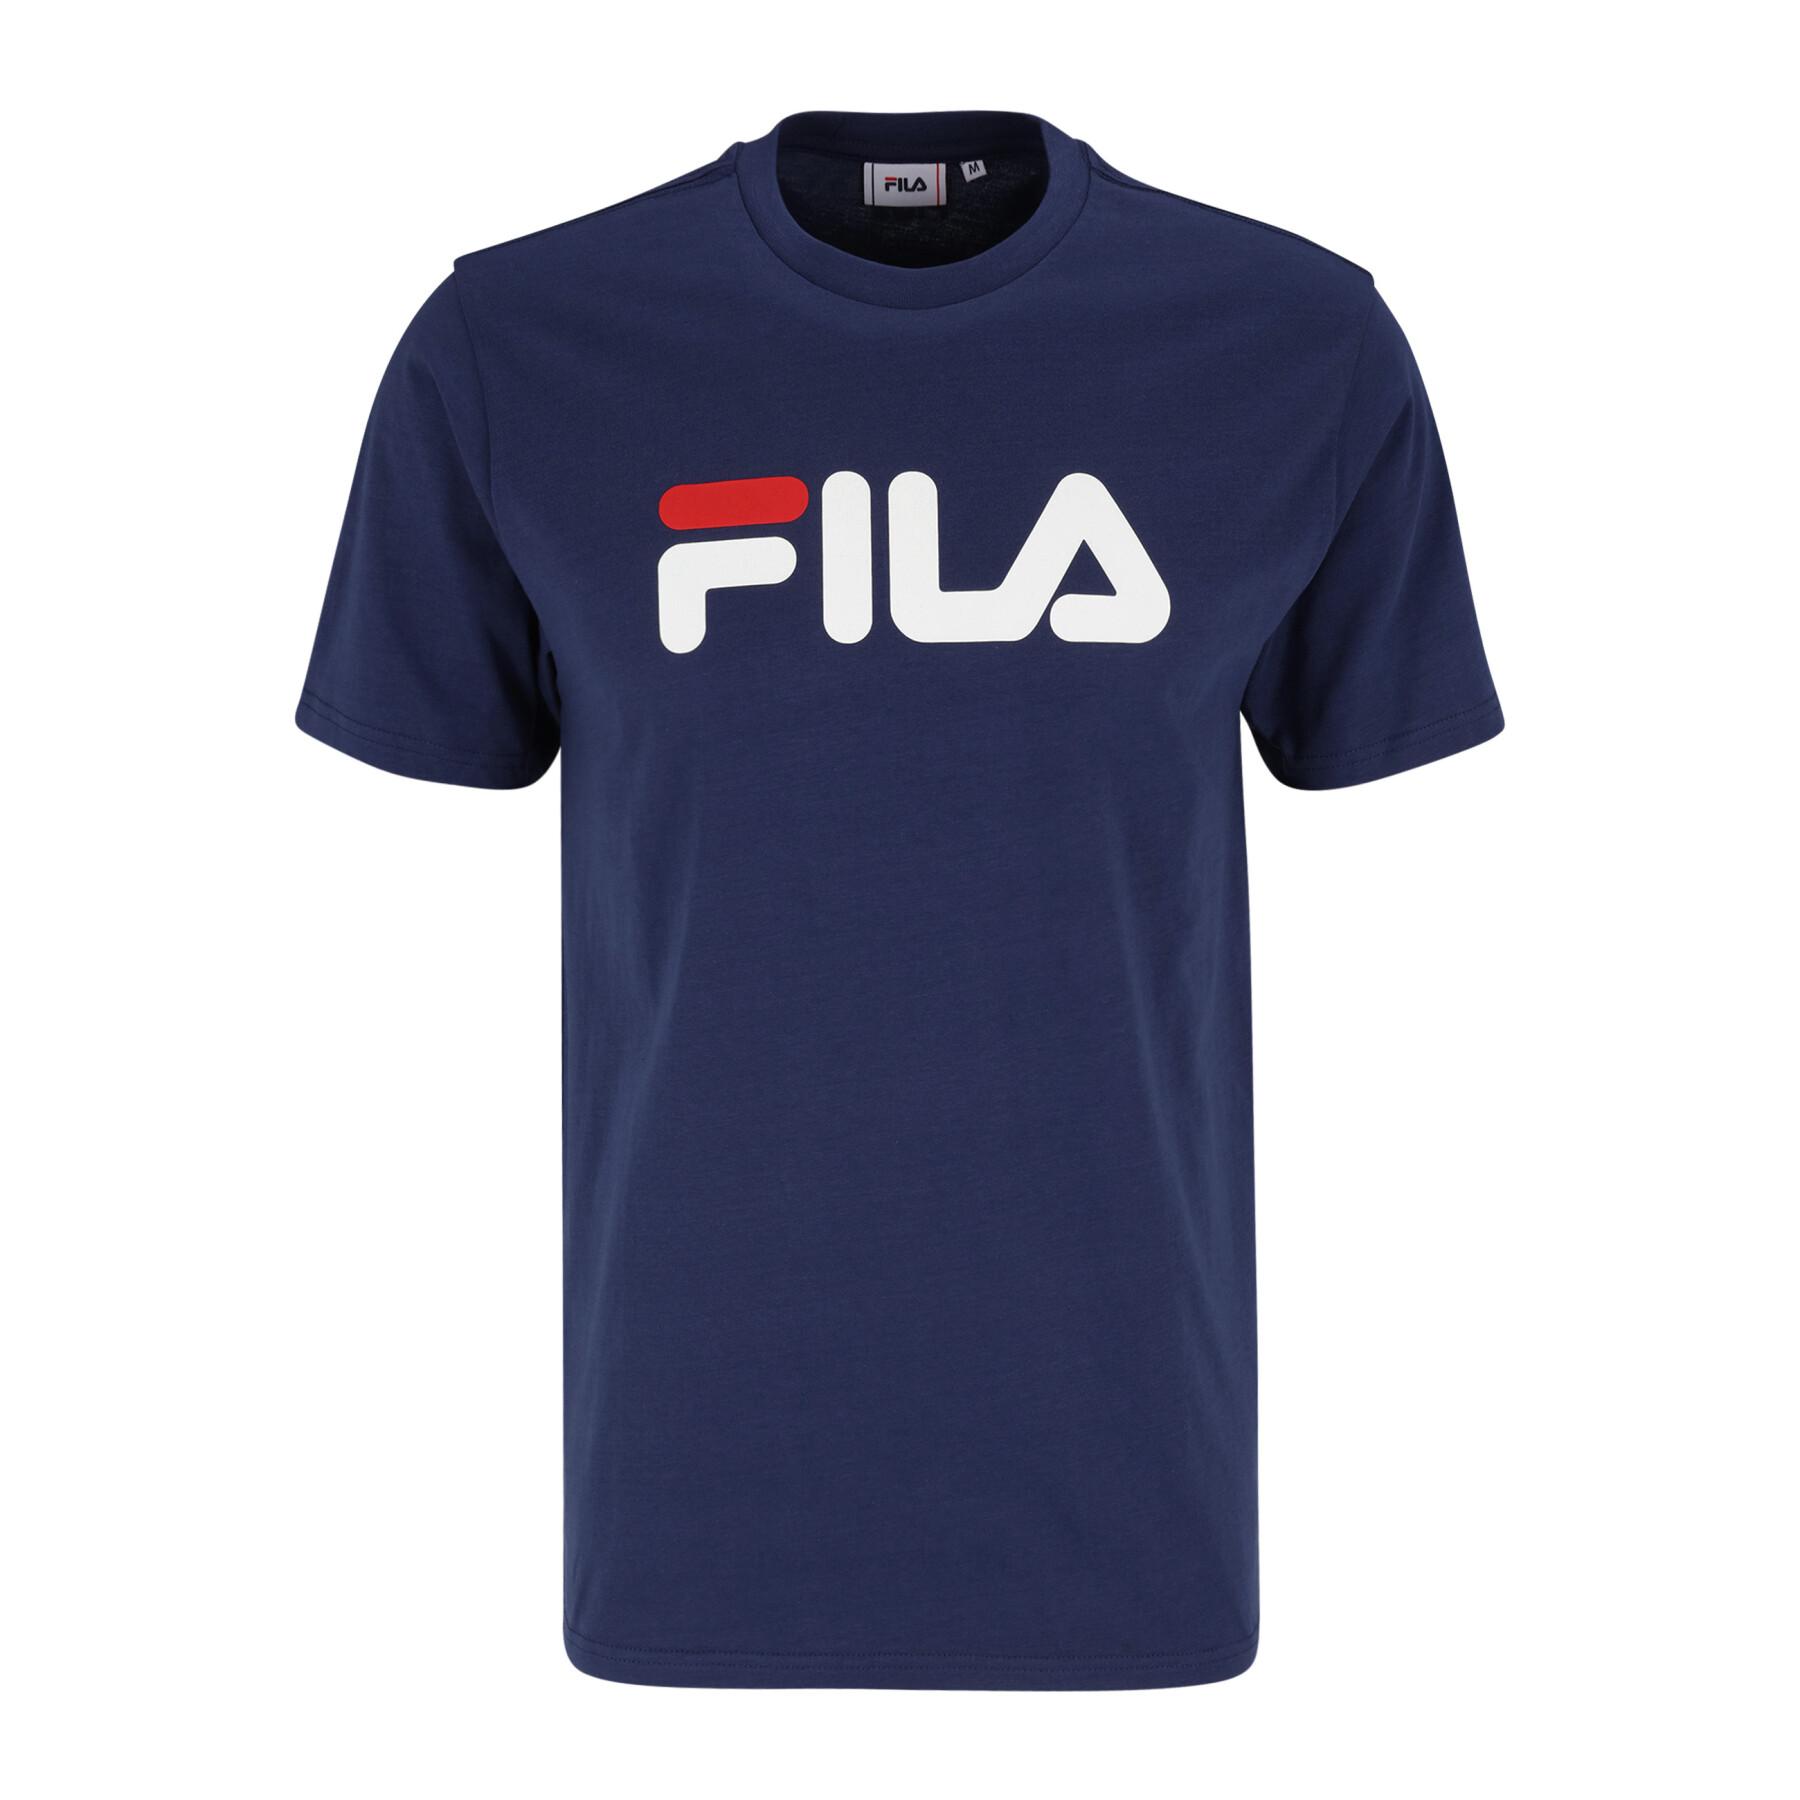 T-shirt Fila Bellano - T-shirts - Lifestyle Male - Lifestyle